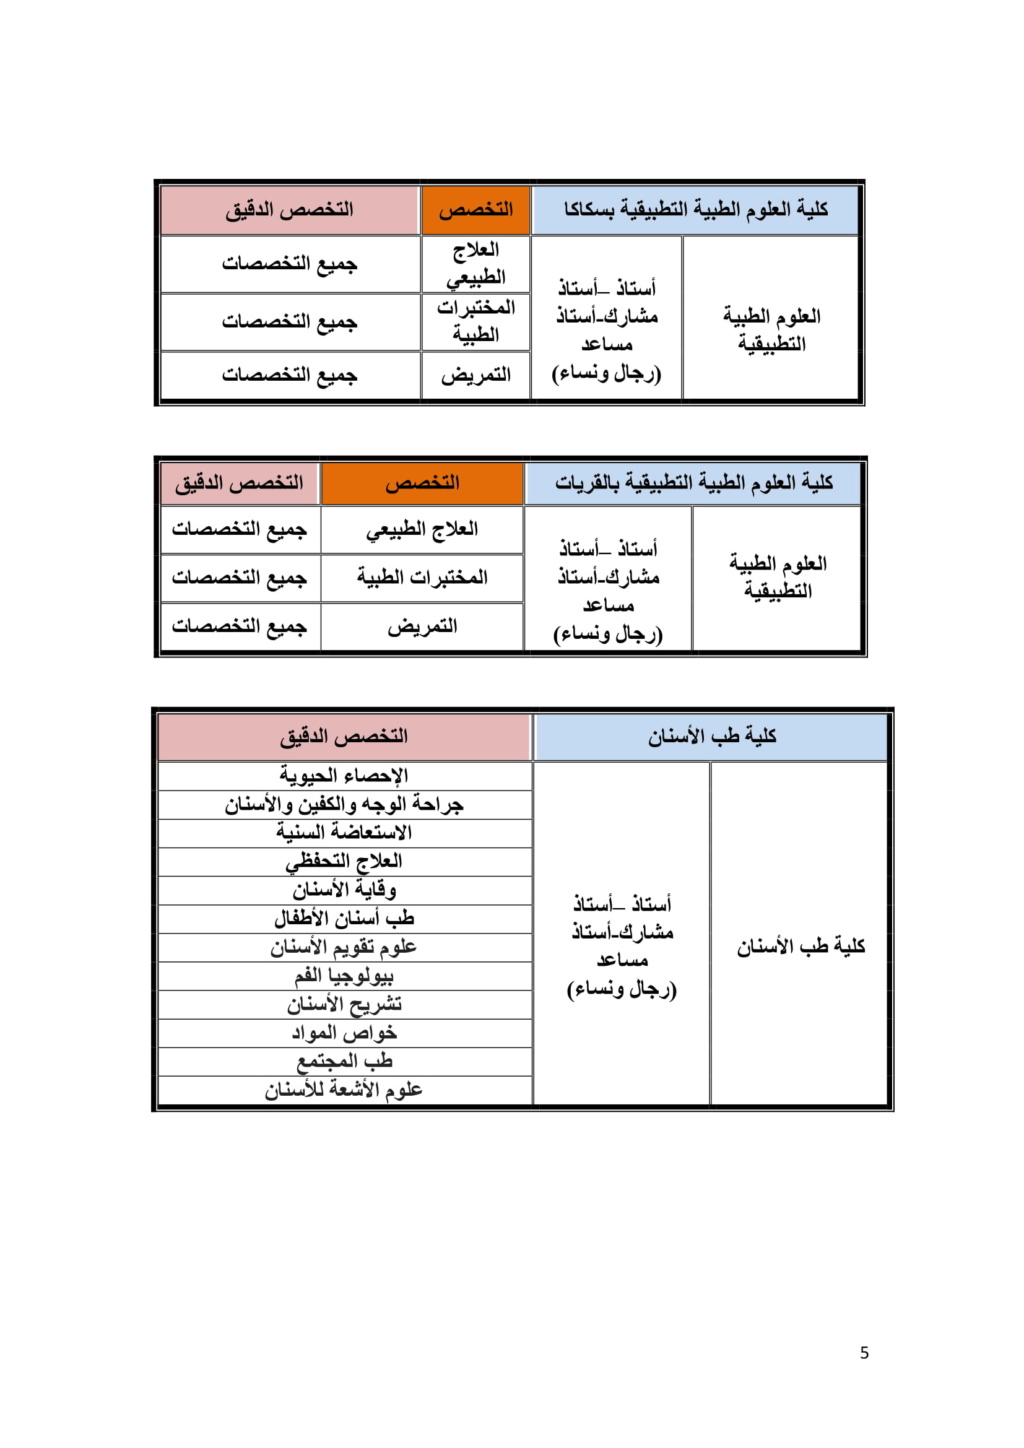 الجوف - جامعة الجوف : وظائف أكاديمية للسعوديين جديدة 526